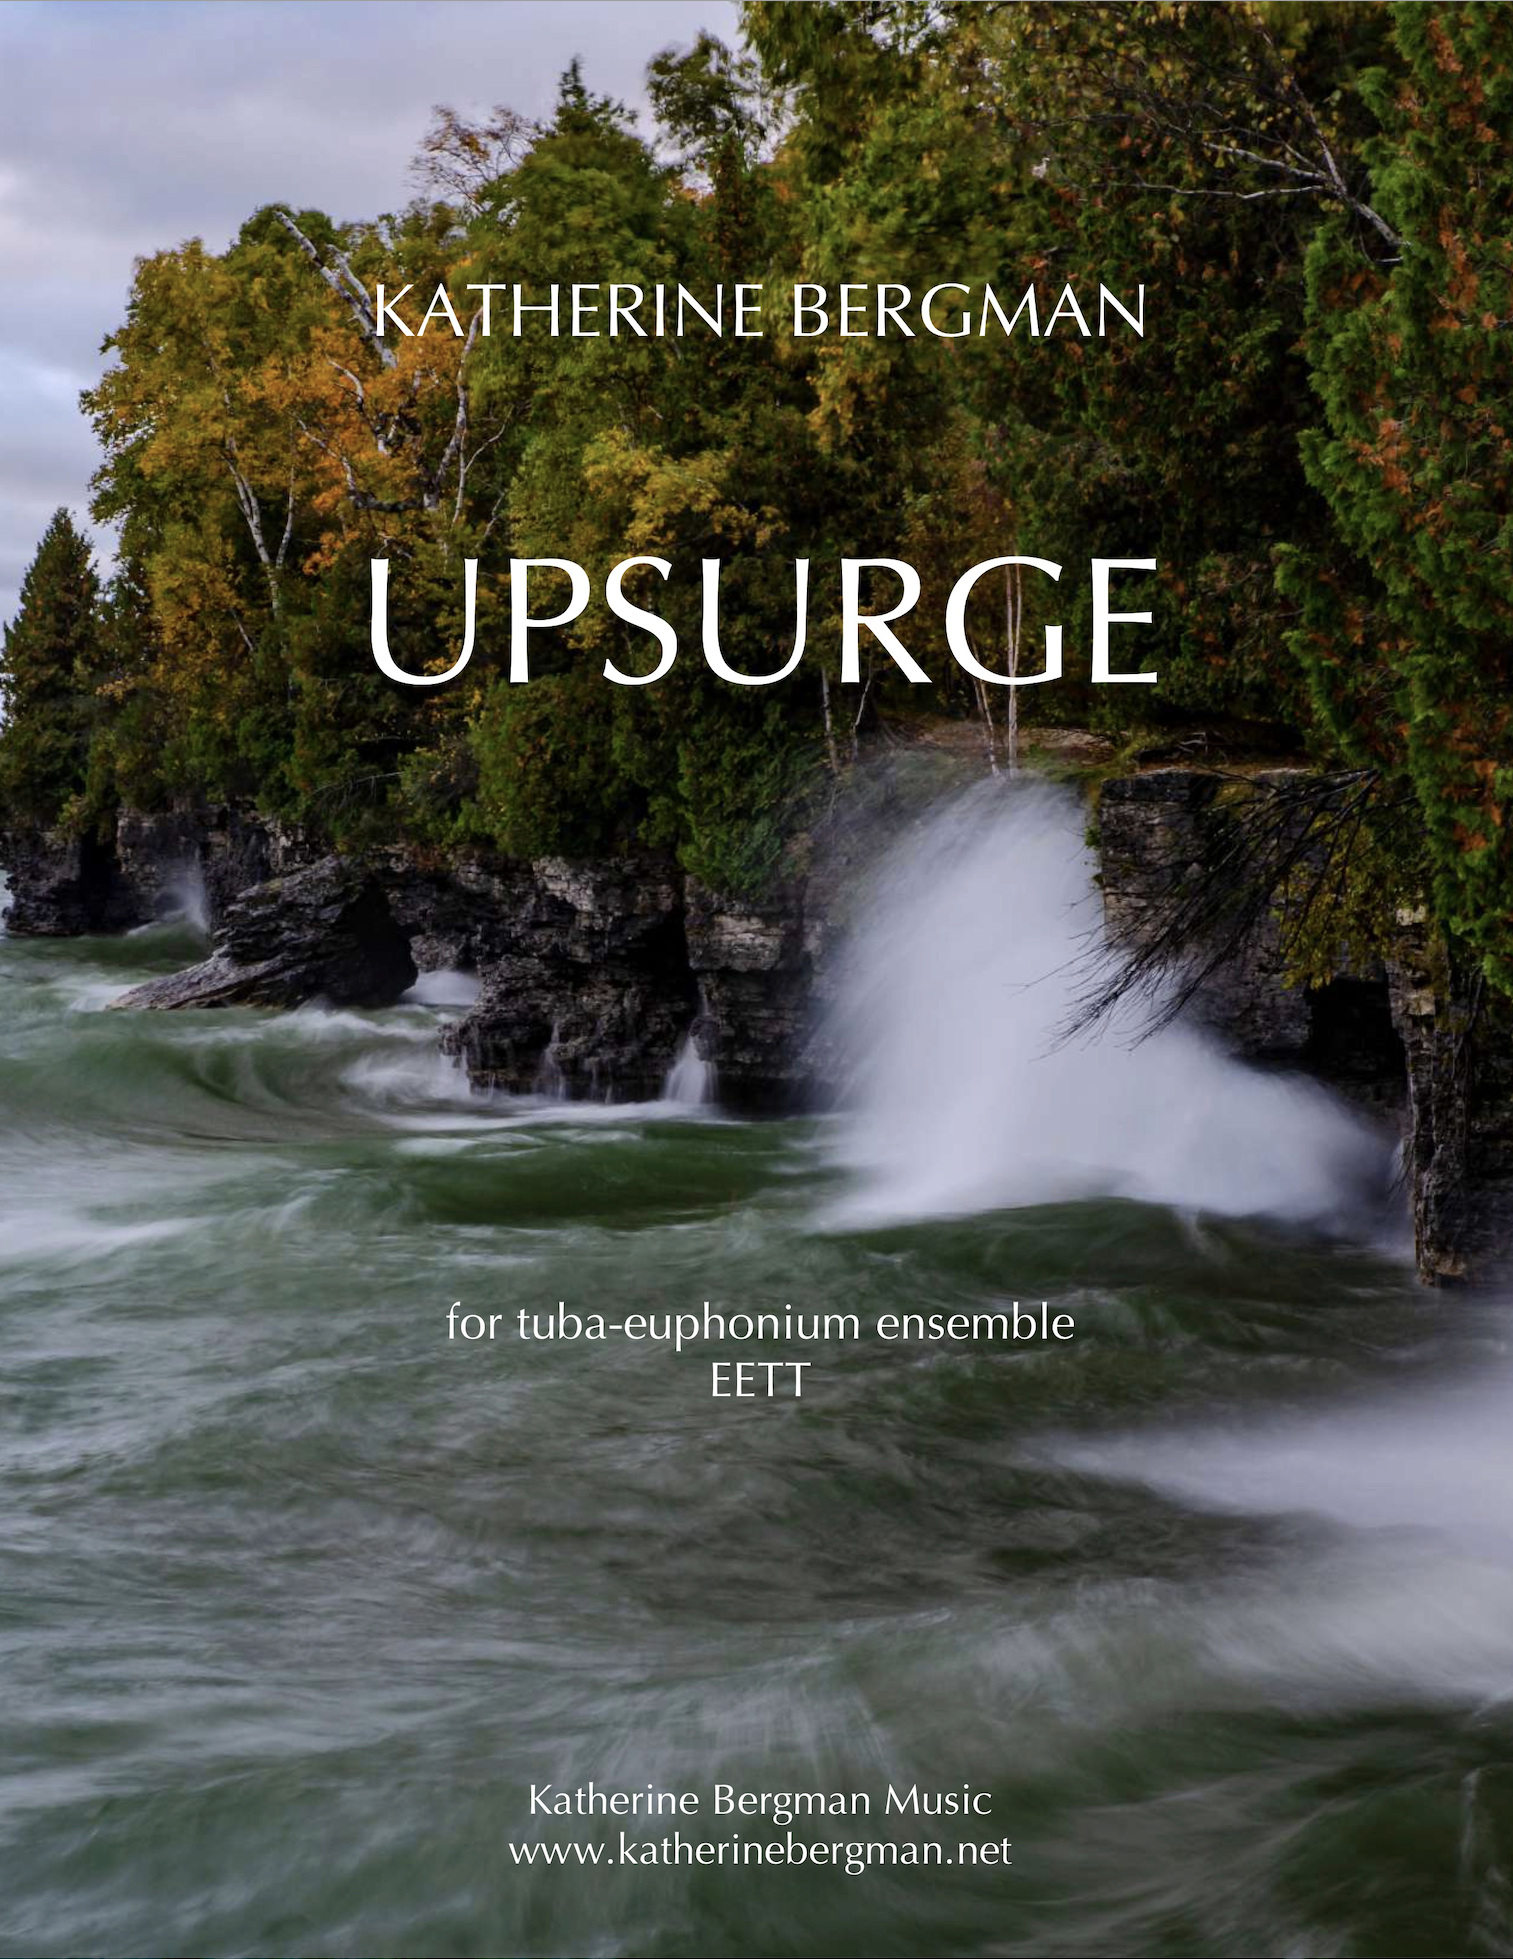 Upsurge by Katherine Bergman